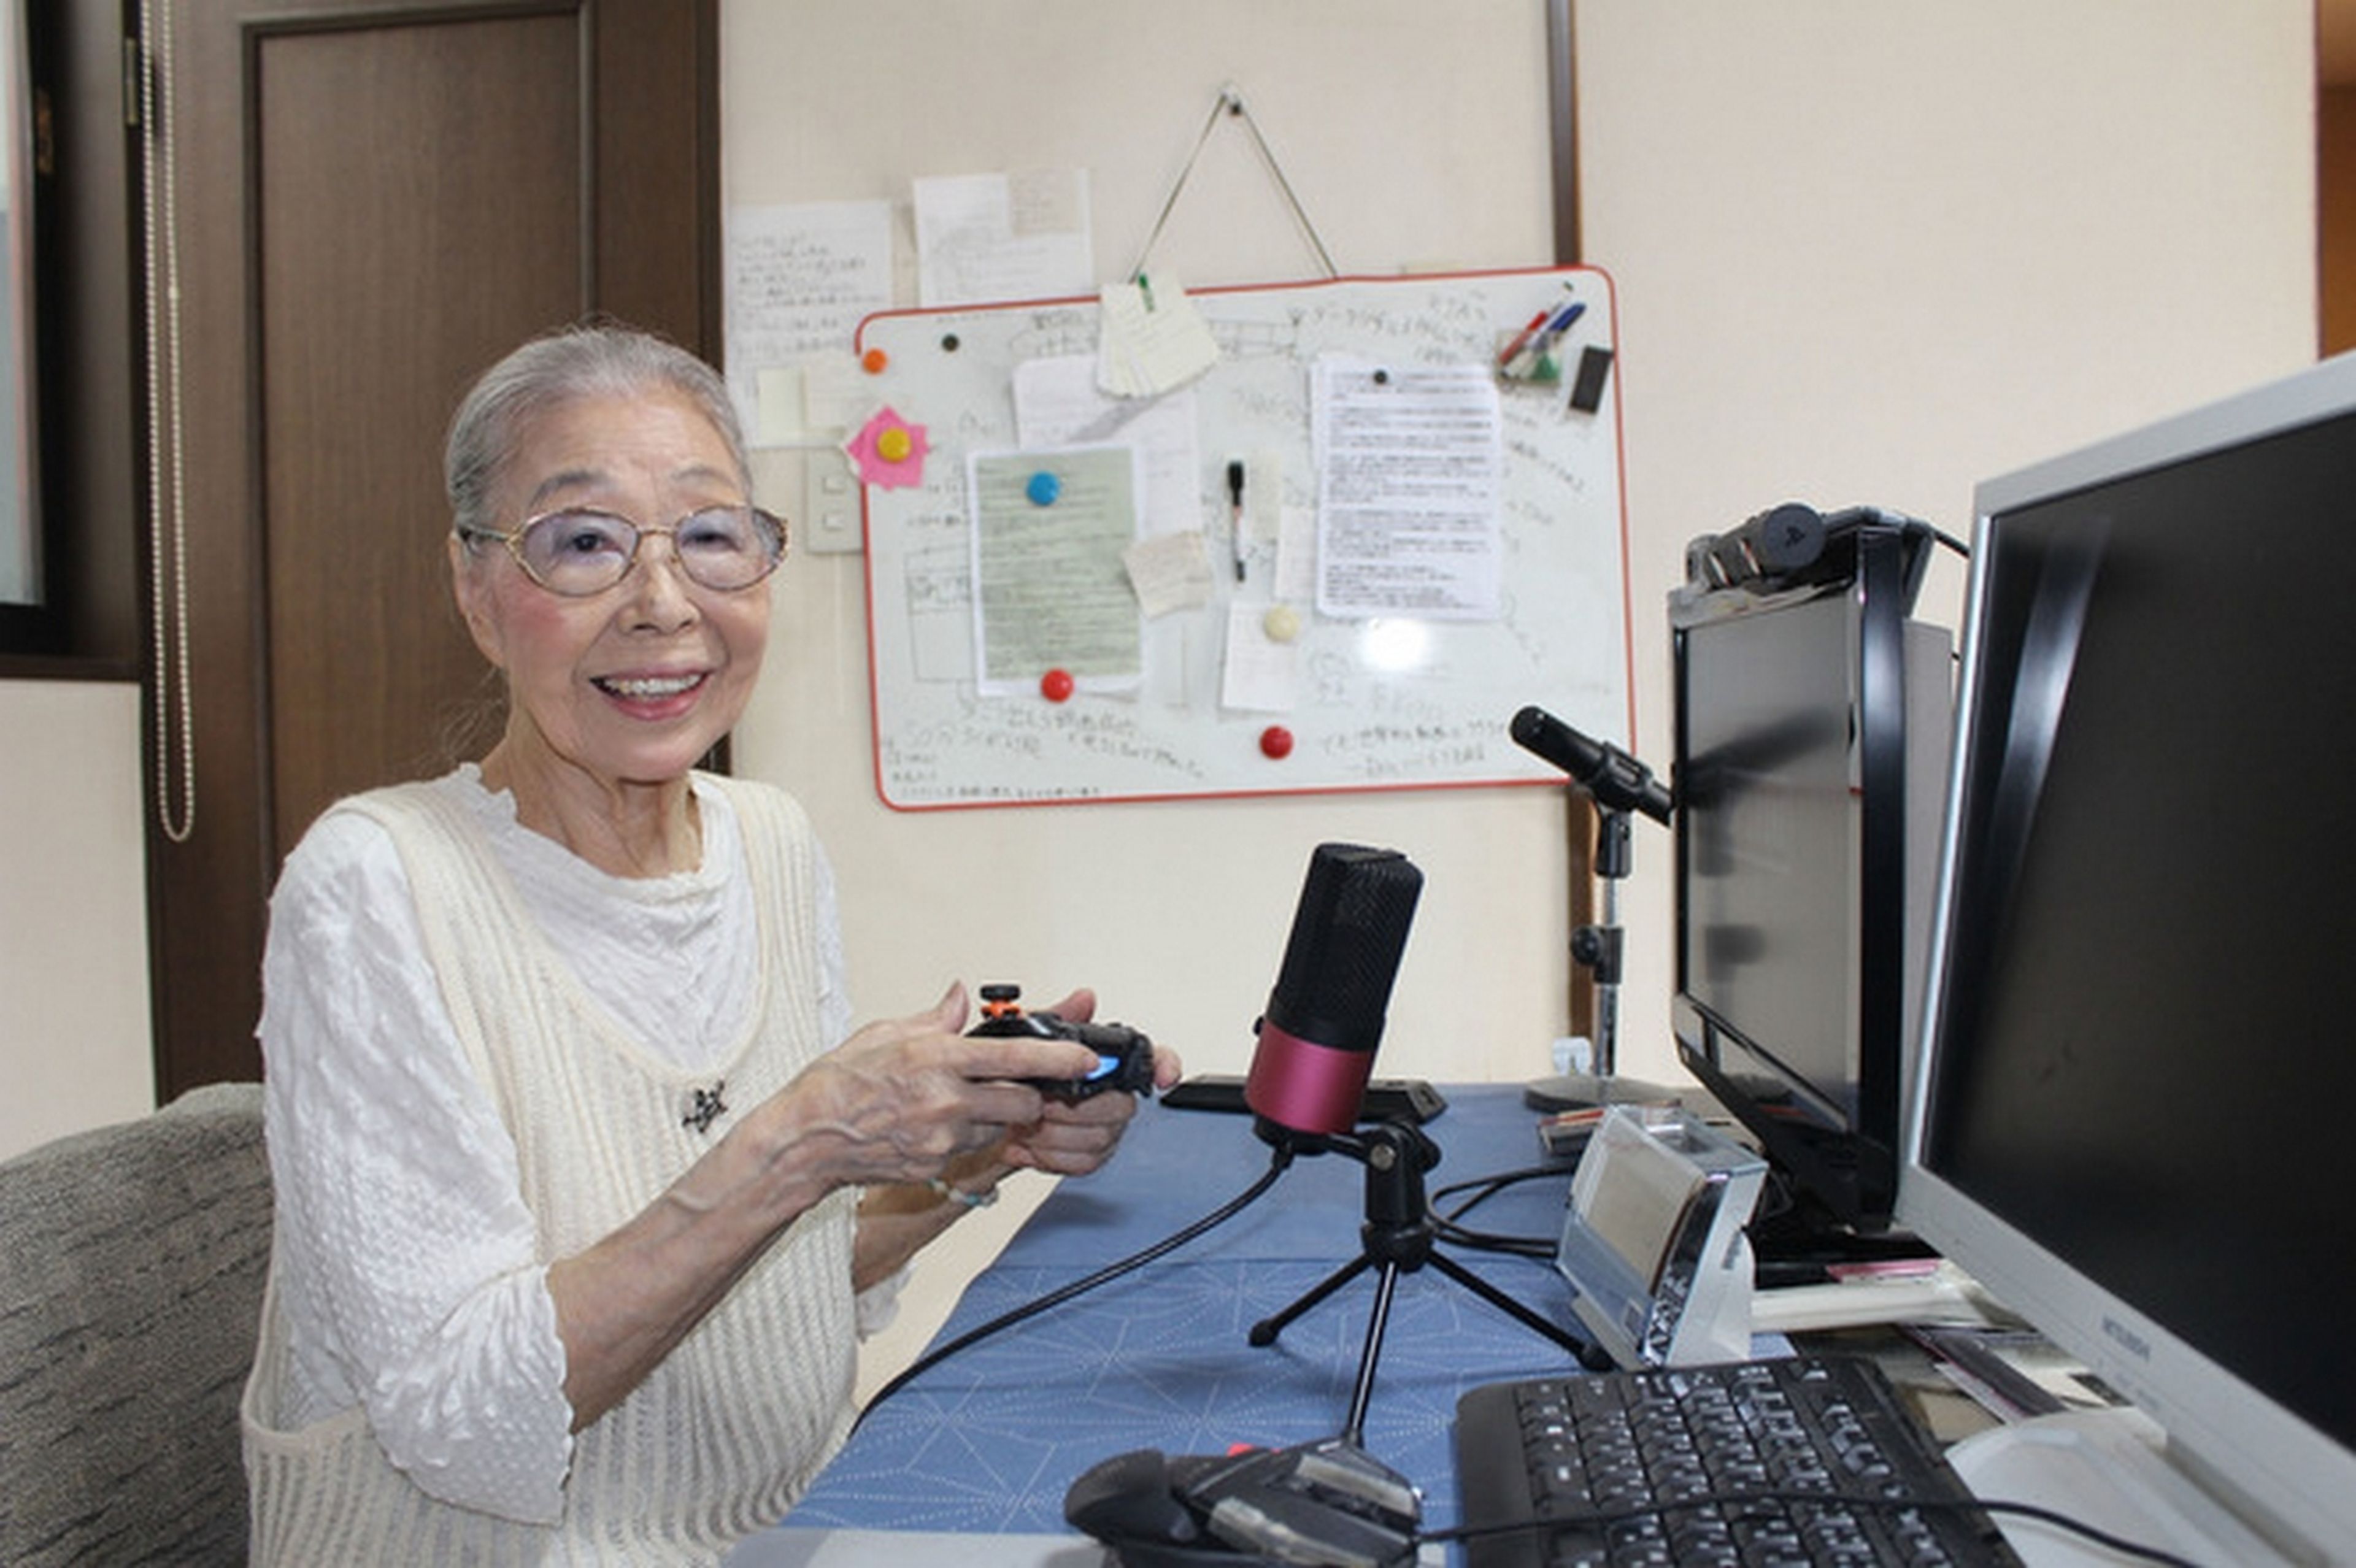 La abuela de 89 años que juegos a GTA V y Call of Duty es un anticipo del futuro